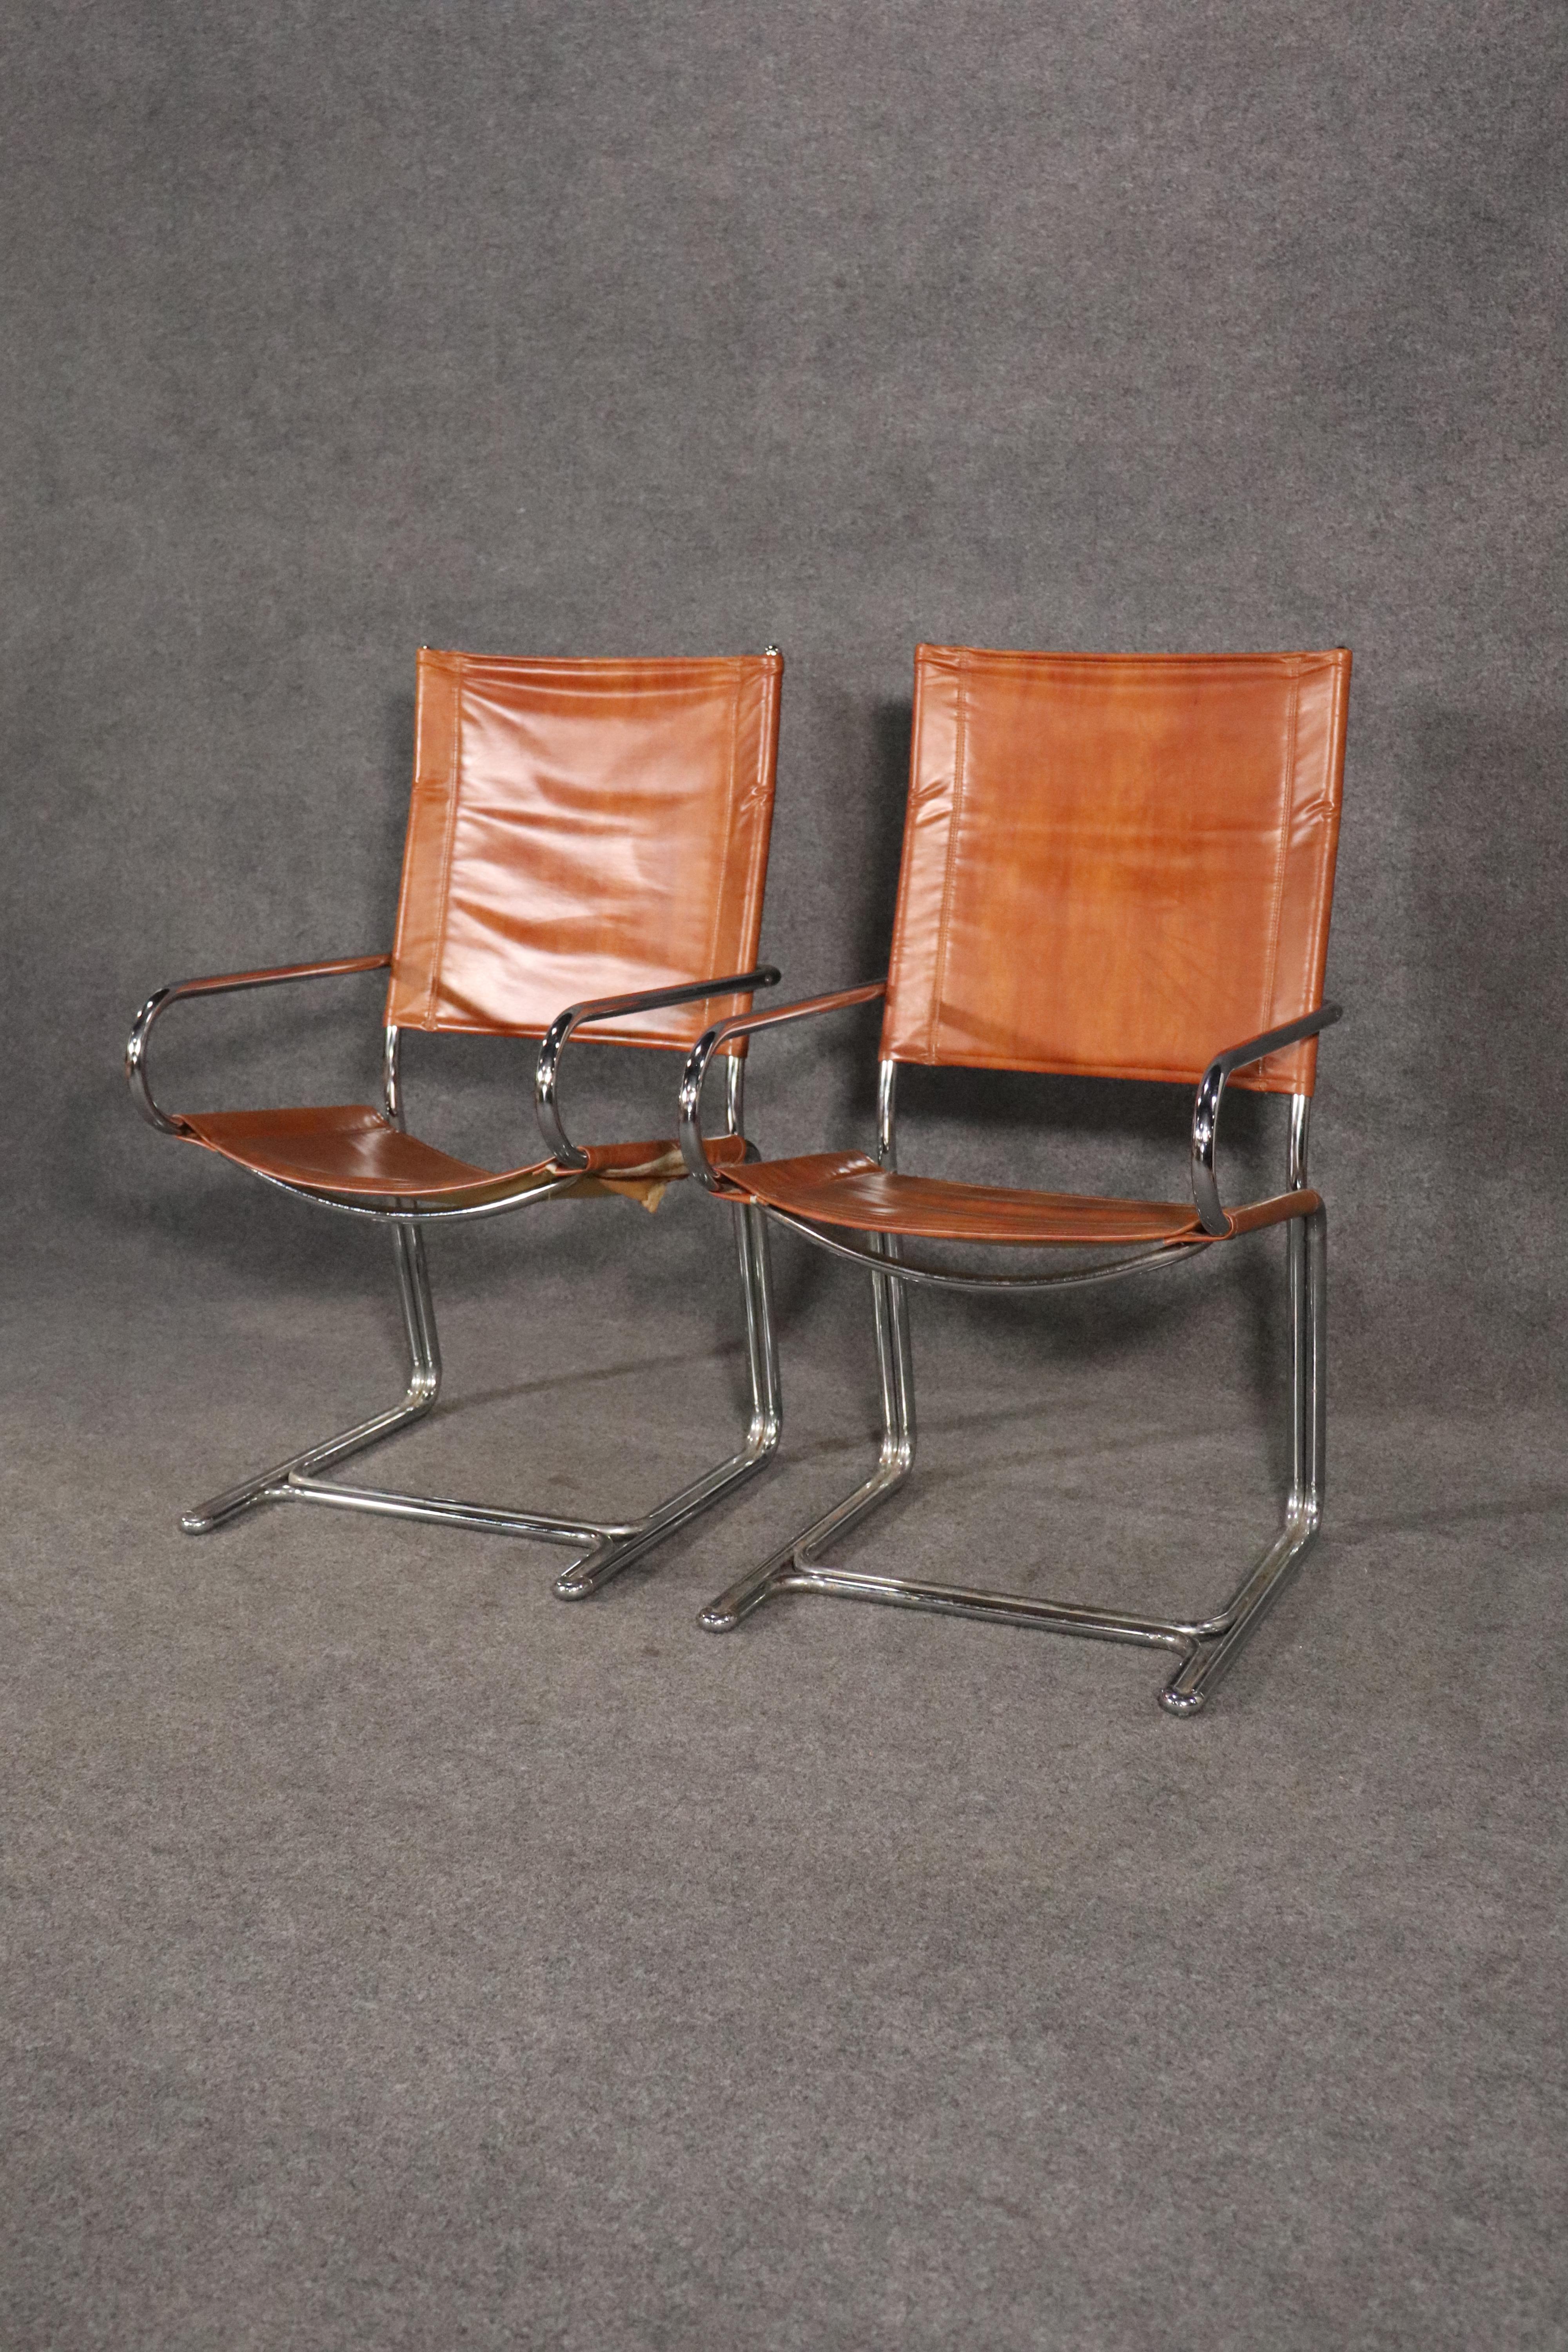 Paire de fauteuils modernes du milieu du siècle fabriqués par Cosco Home Products. Fabriqué à partir de solides cadres en chrome poli, pliés pour faire le tour complet de la chaise. Accoudoirs à profil bas, tissu style cuir en bandoulière, robuste